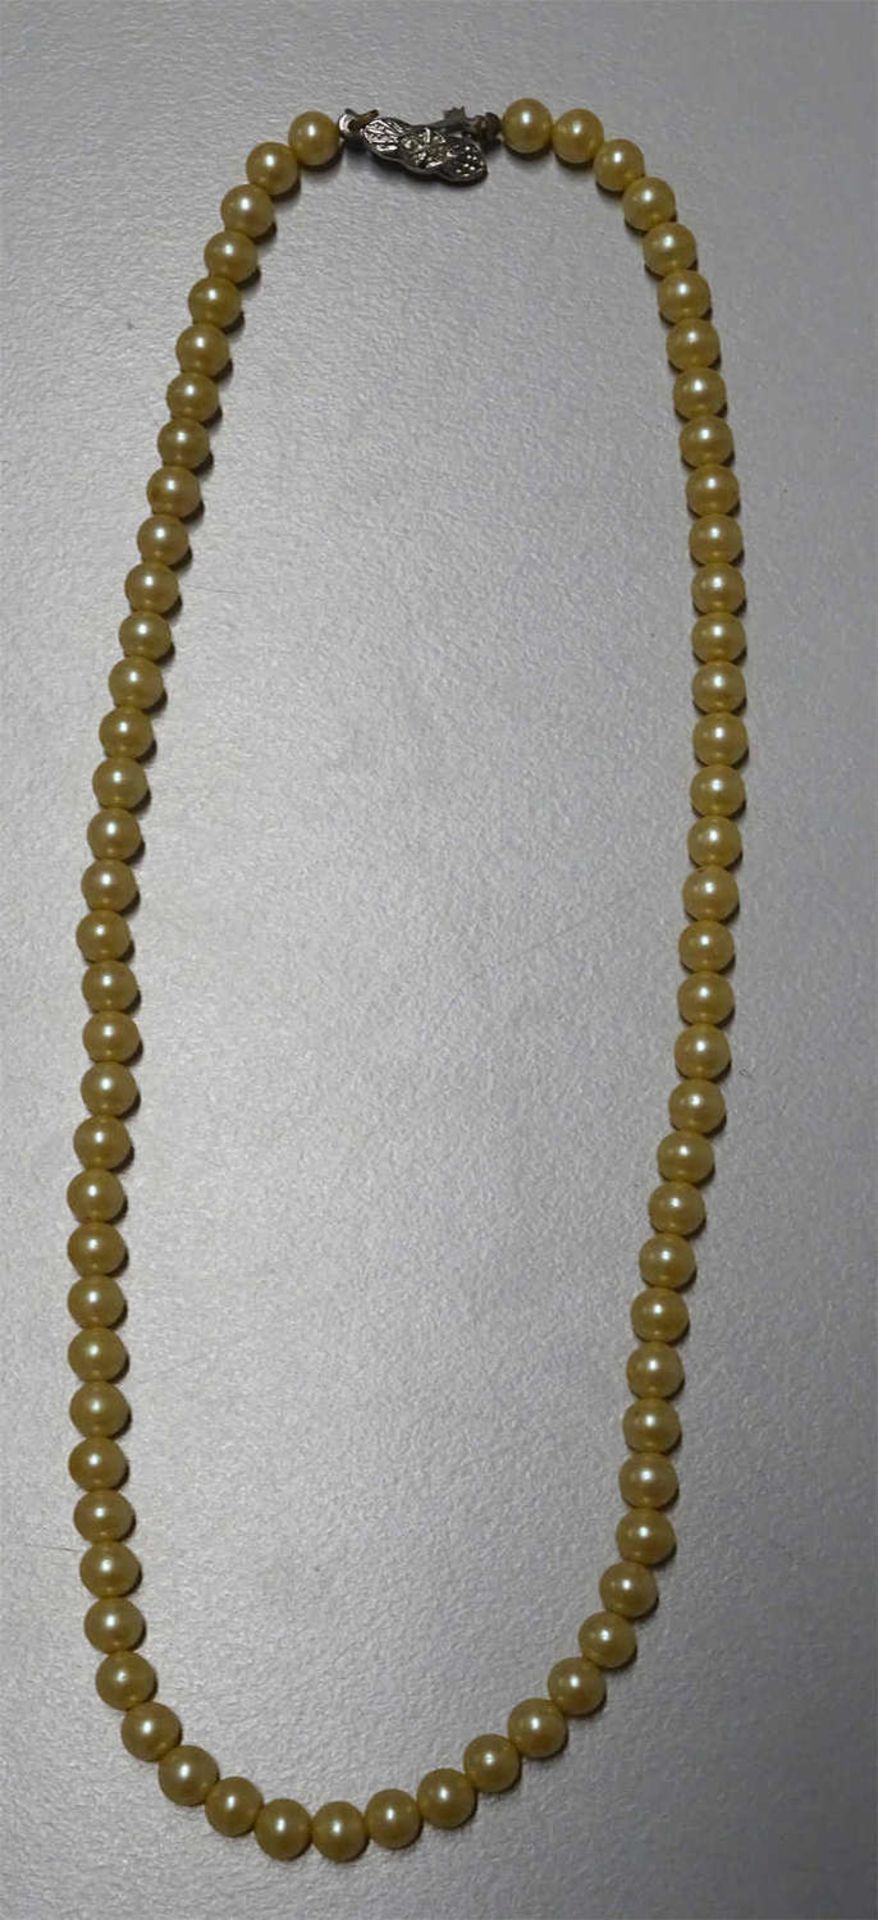 Perlenkette mit 835er Silberverschluß. Länge ca. 42 cmPearl necklace with 835 silver clasp. Length